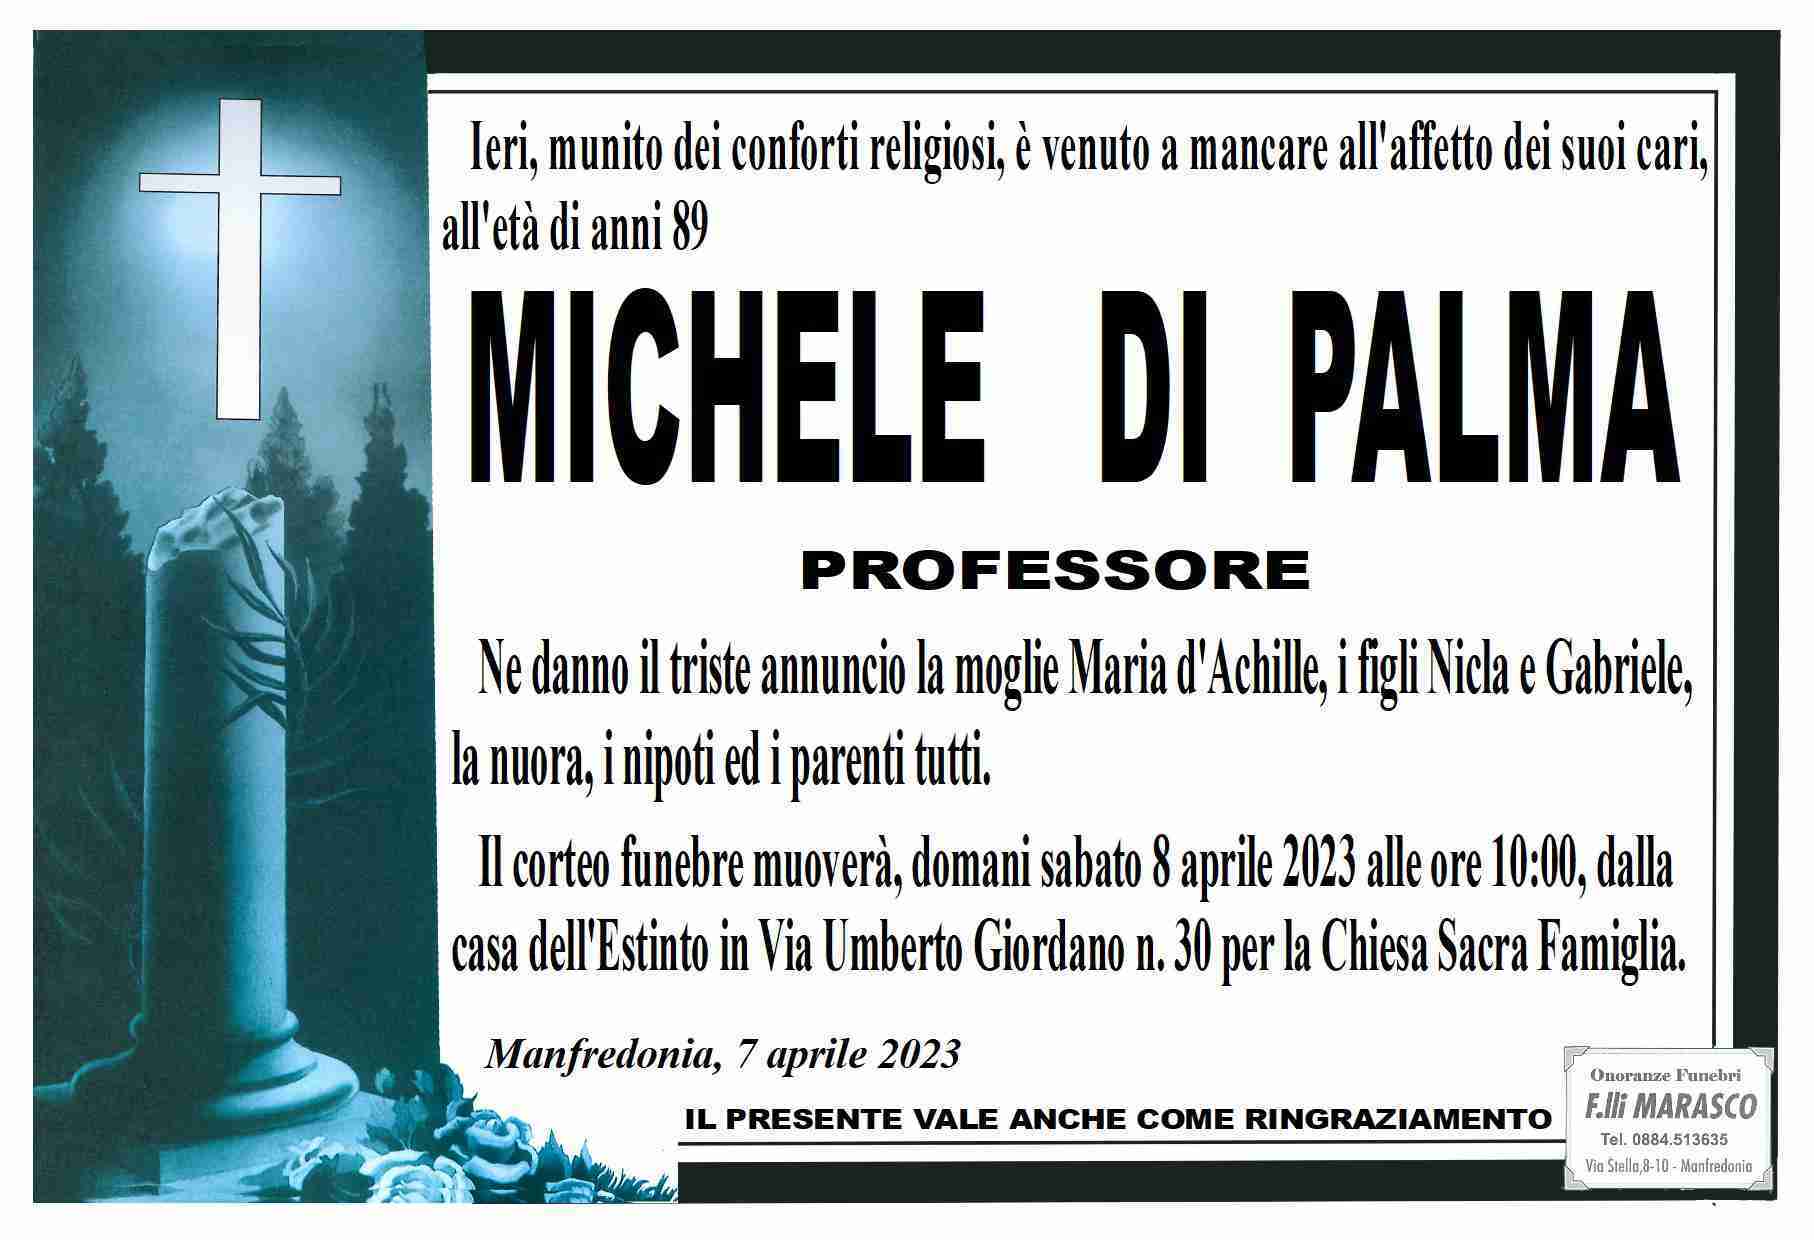 Michele Di Palma